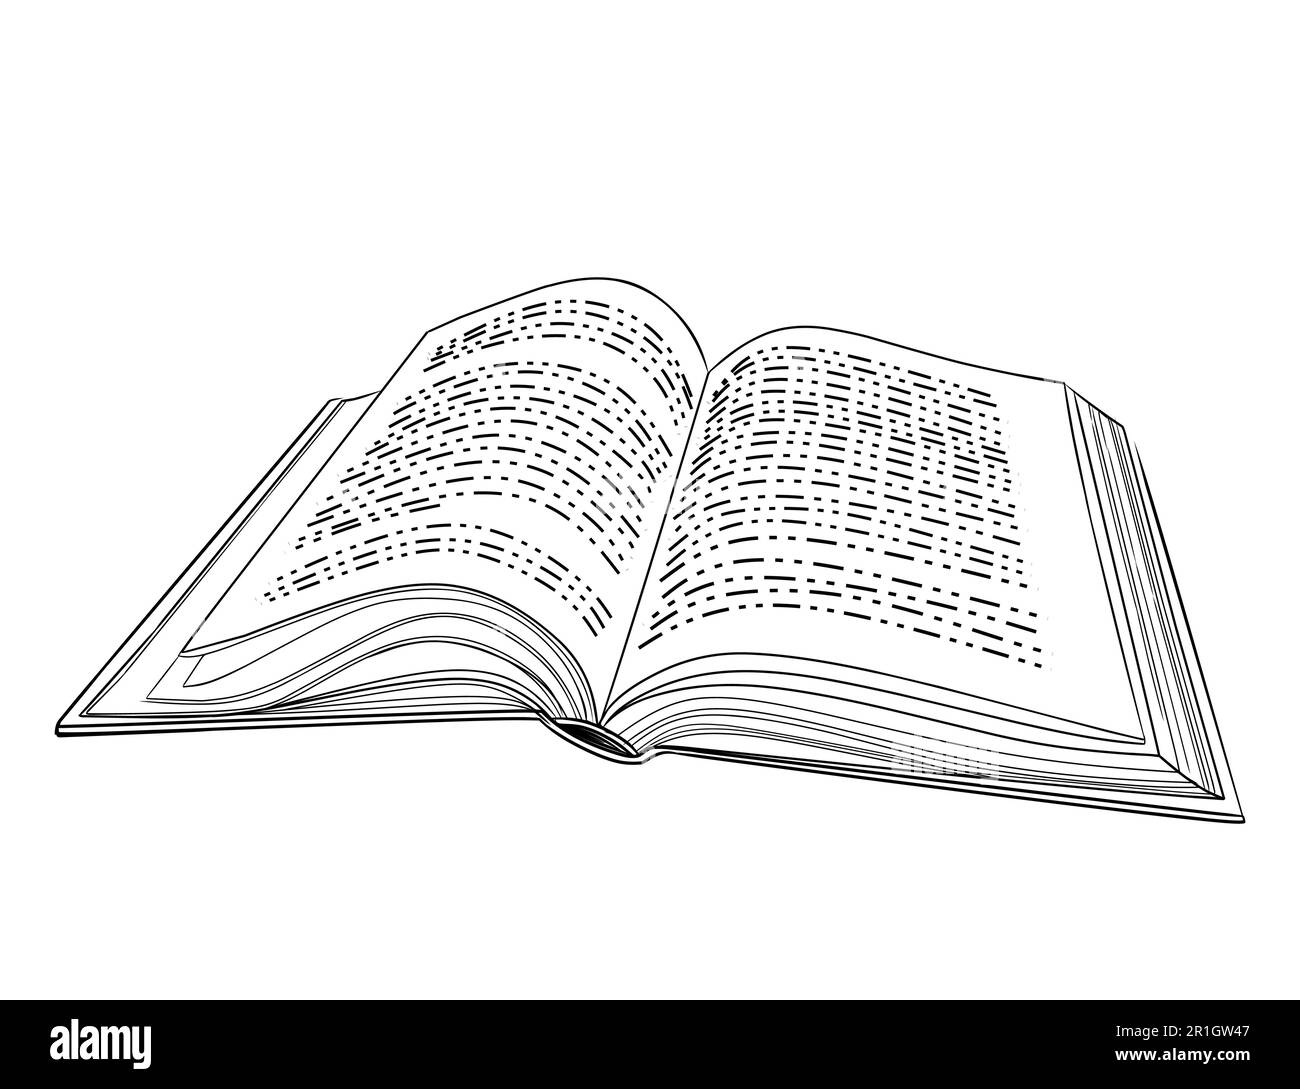 Einfach geöffnetes Buch im Gliederungsstil mit festem Einband-Vektorbild auf weißem Hintergrund Stock Vektor